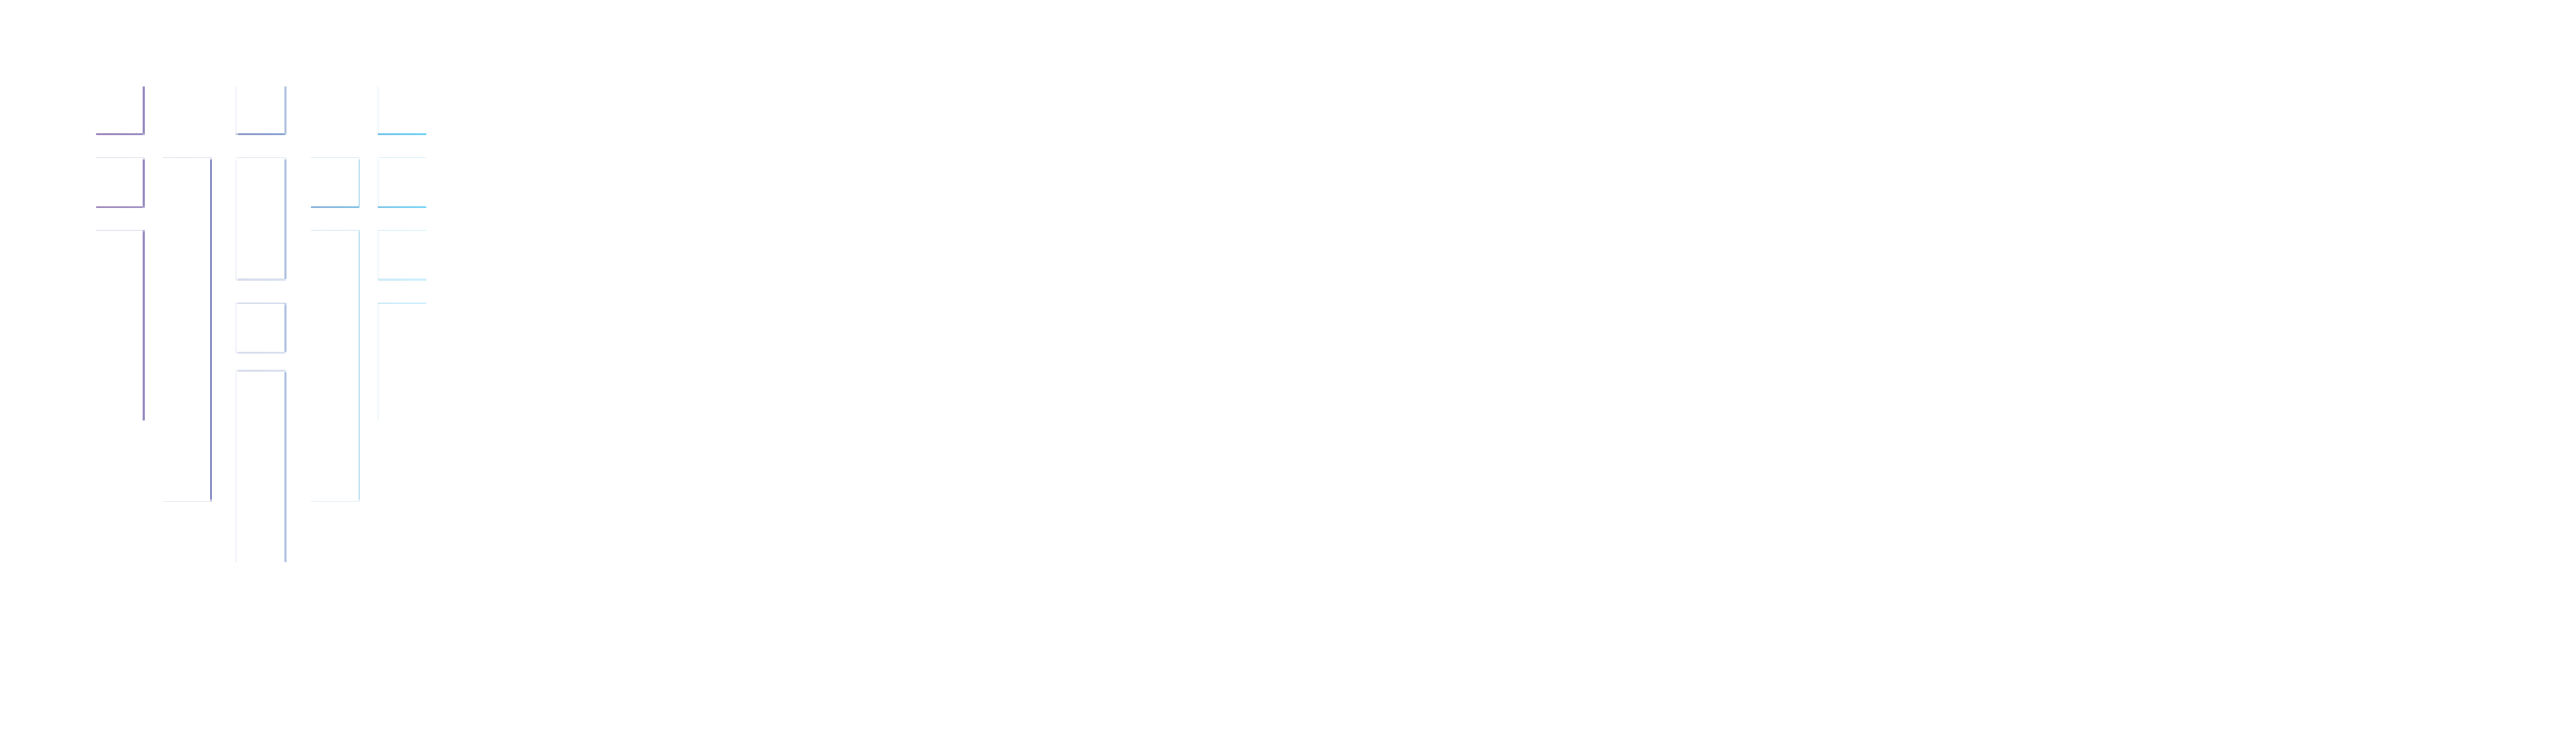 Fortanix Logo White